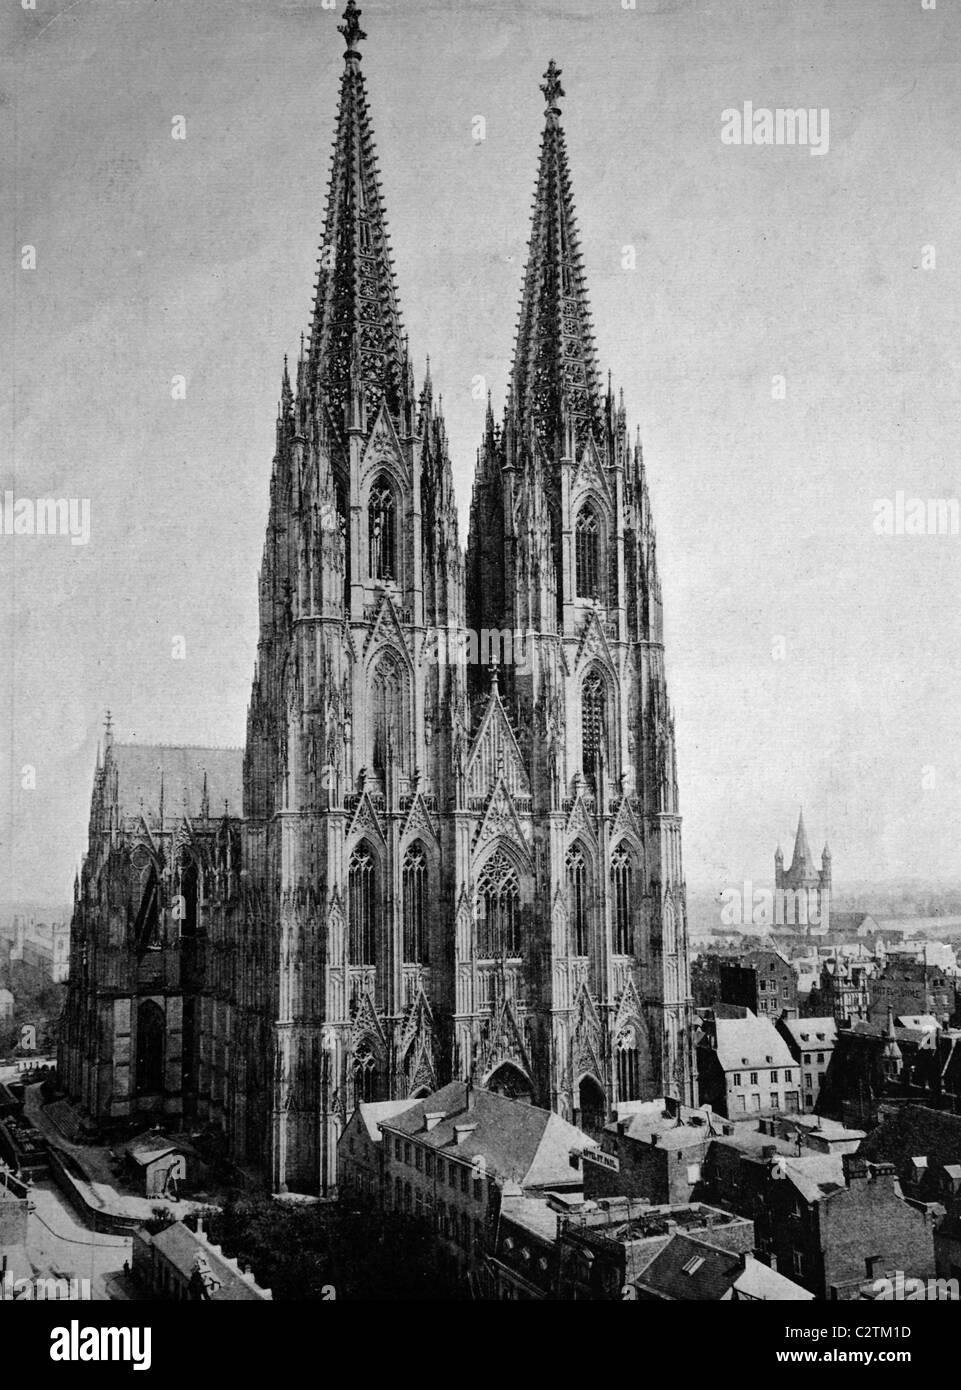 Autotype temprano de la catedral de Colonia Colonia, Sitio del Patrimonio Mundial de la UNESCO, Renania del Norte-Westfalia, Alemania, foto histórica, Foto de stock